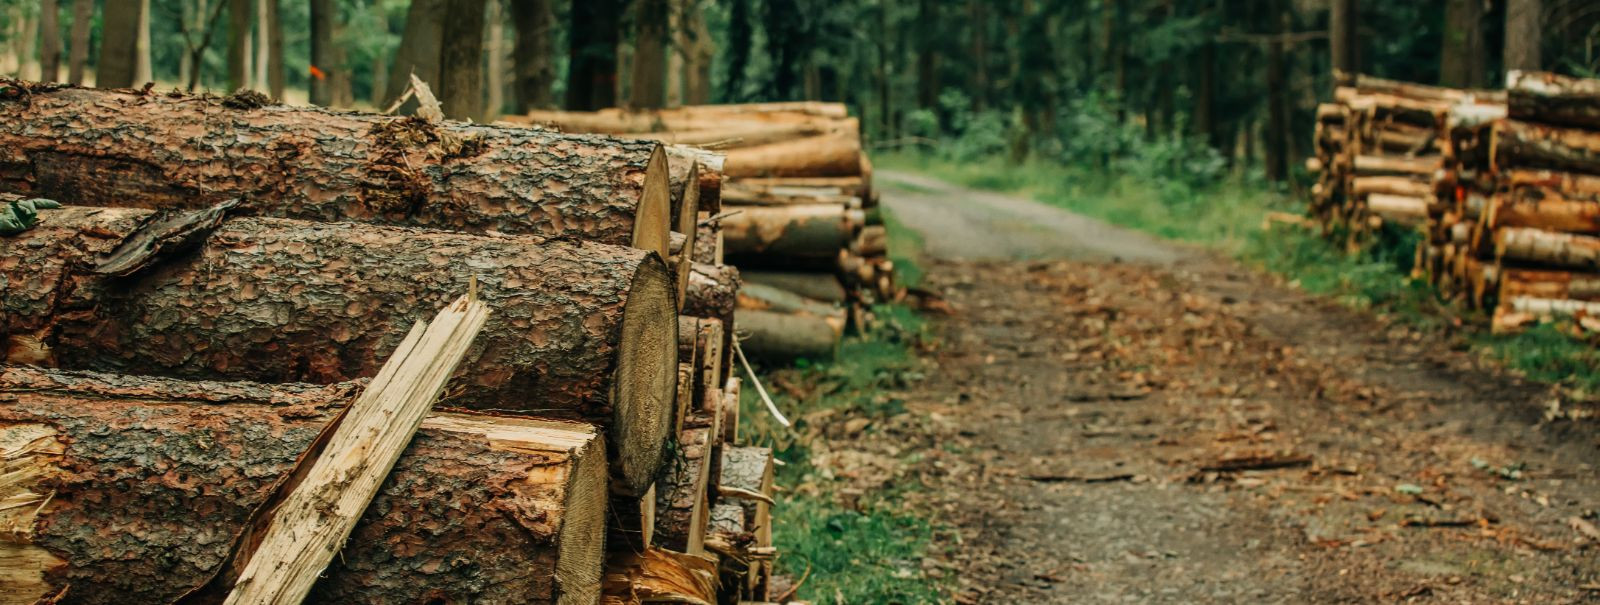 Raieõigused on juriidilised load, mis antakse isikule või organisatsioonile puidu raiumiseks kindlal maatükil. Neid õigusi on võimalik omandada erinevatel viisi